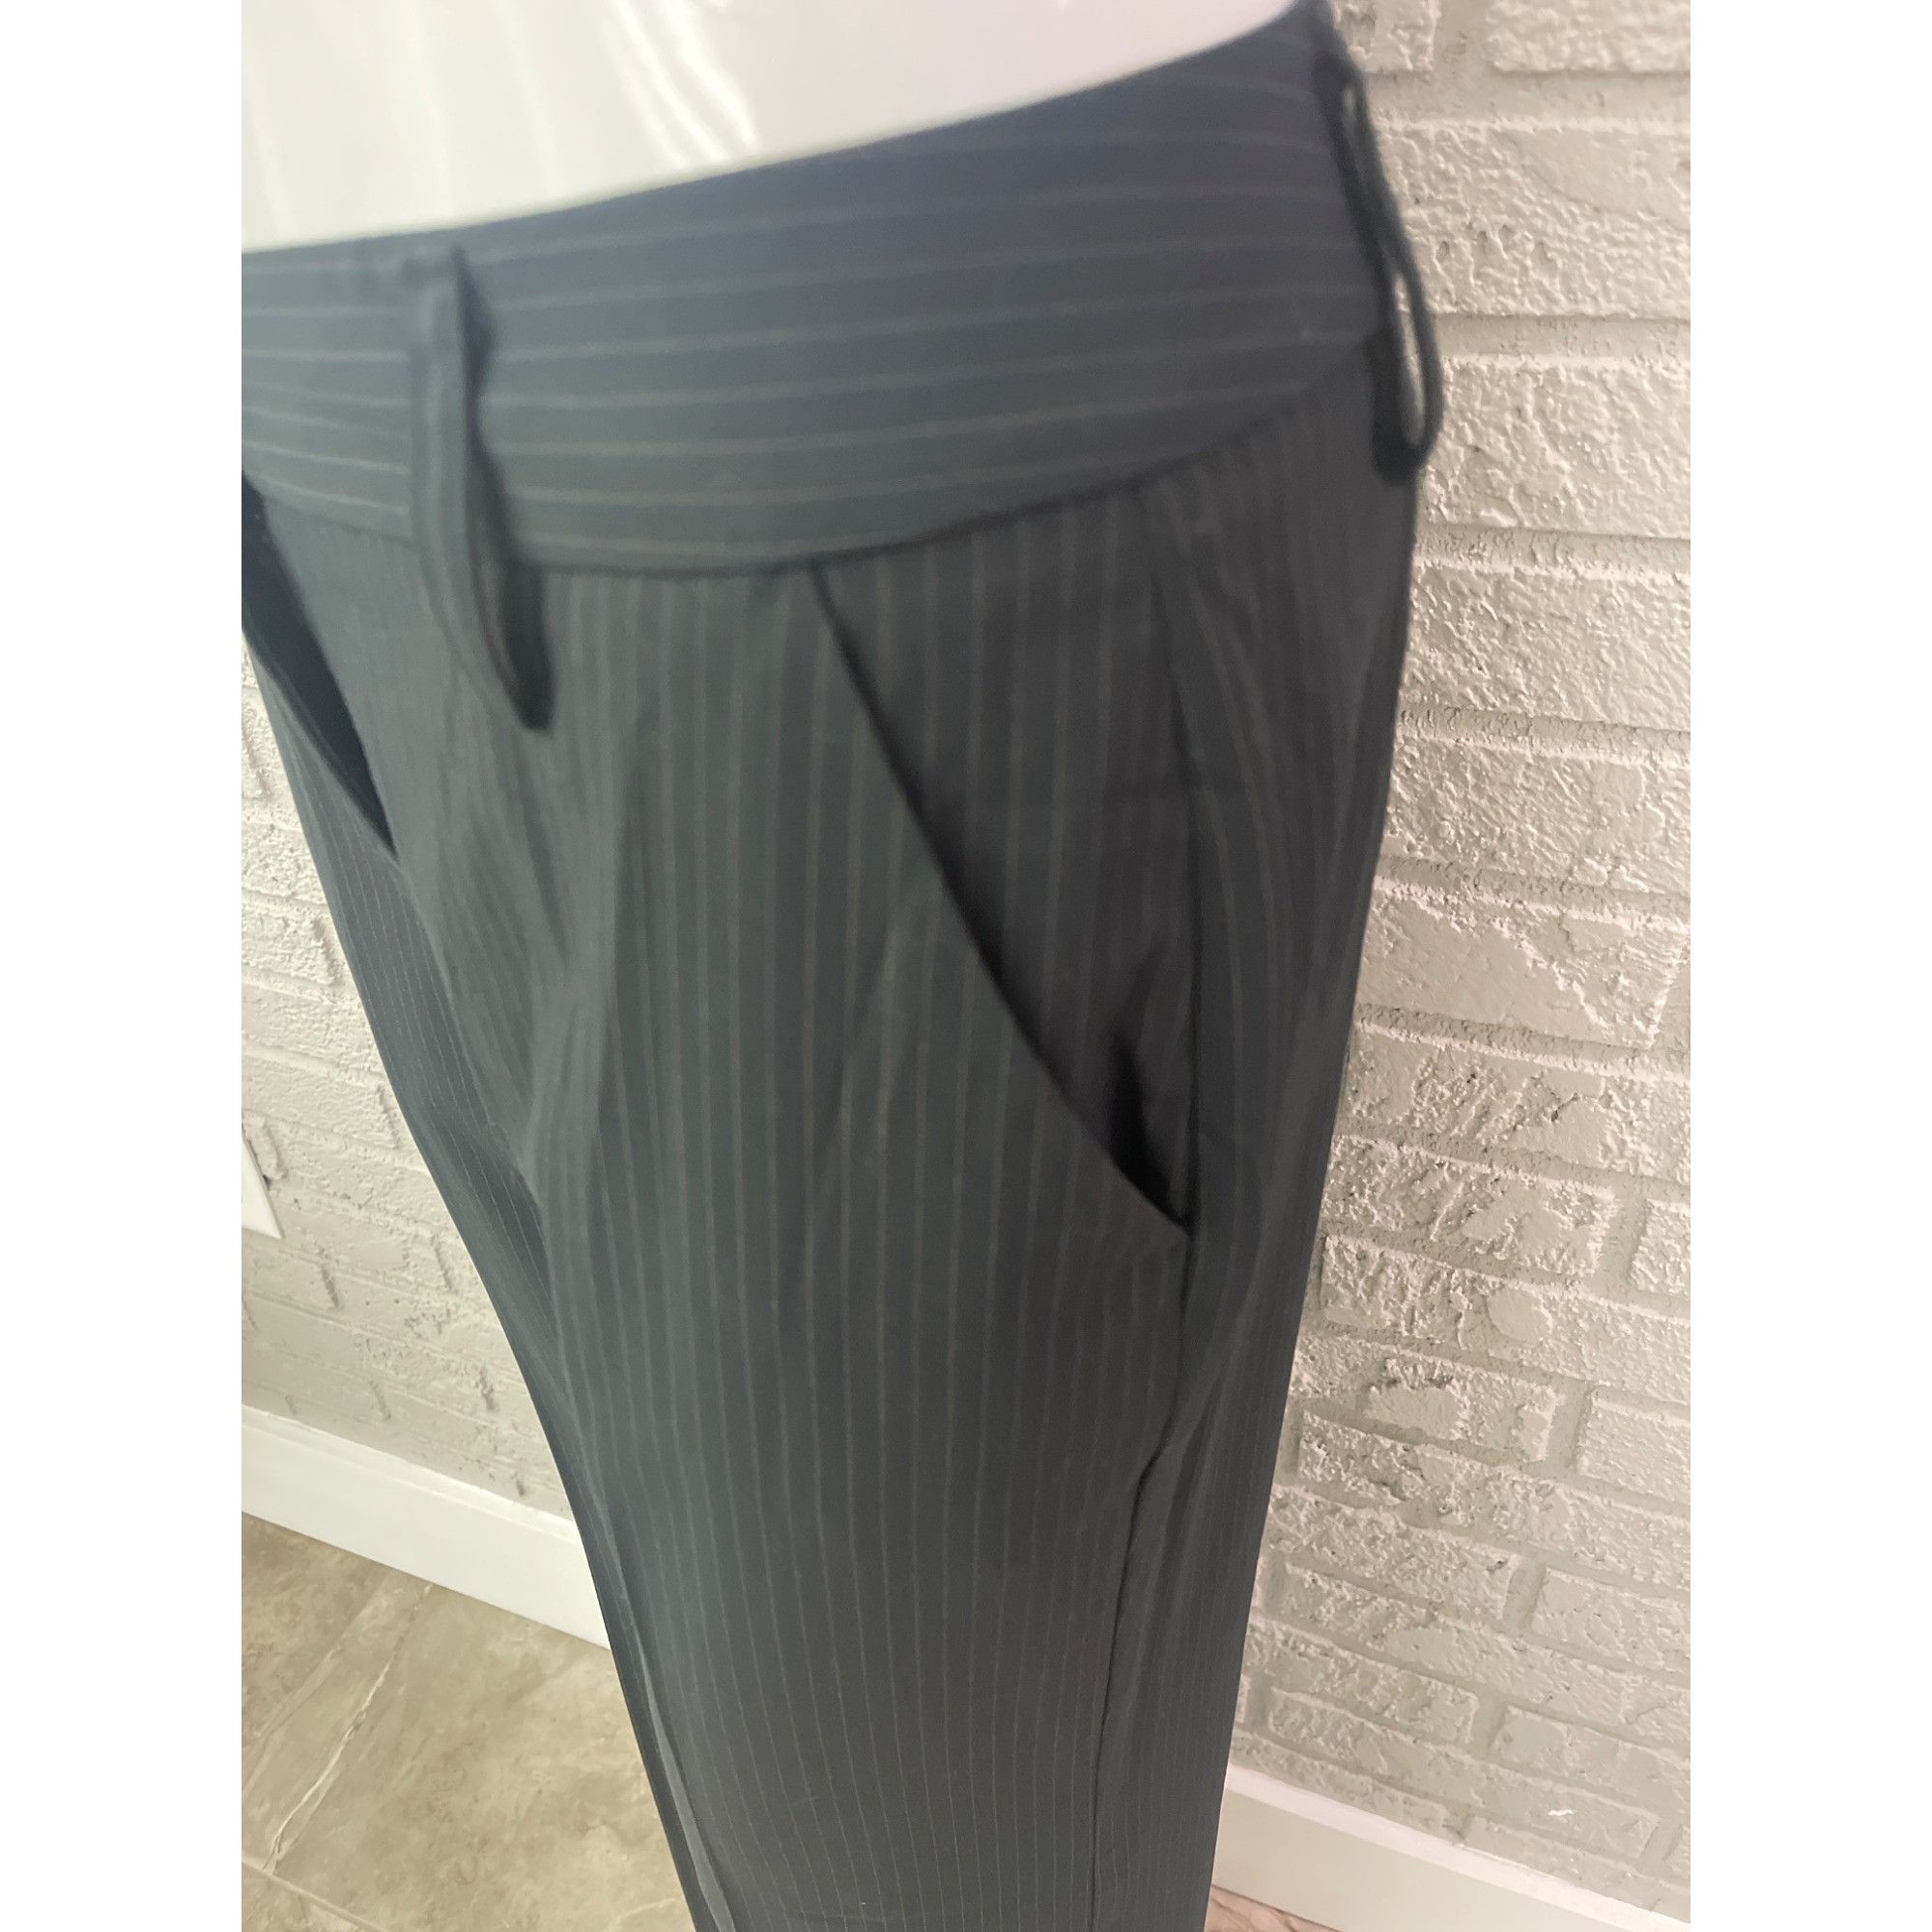 Other Cabi Black Pin Striped Pant 2 Pcs Suit Set Jacket 4 Pant 6 Size S / US 4 / IT 40 - 9 Thumbnail